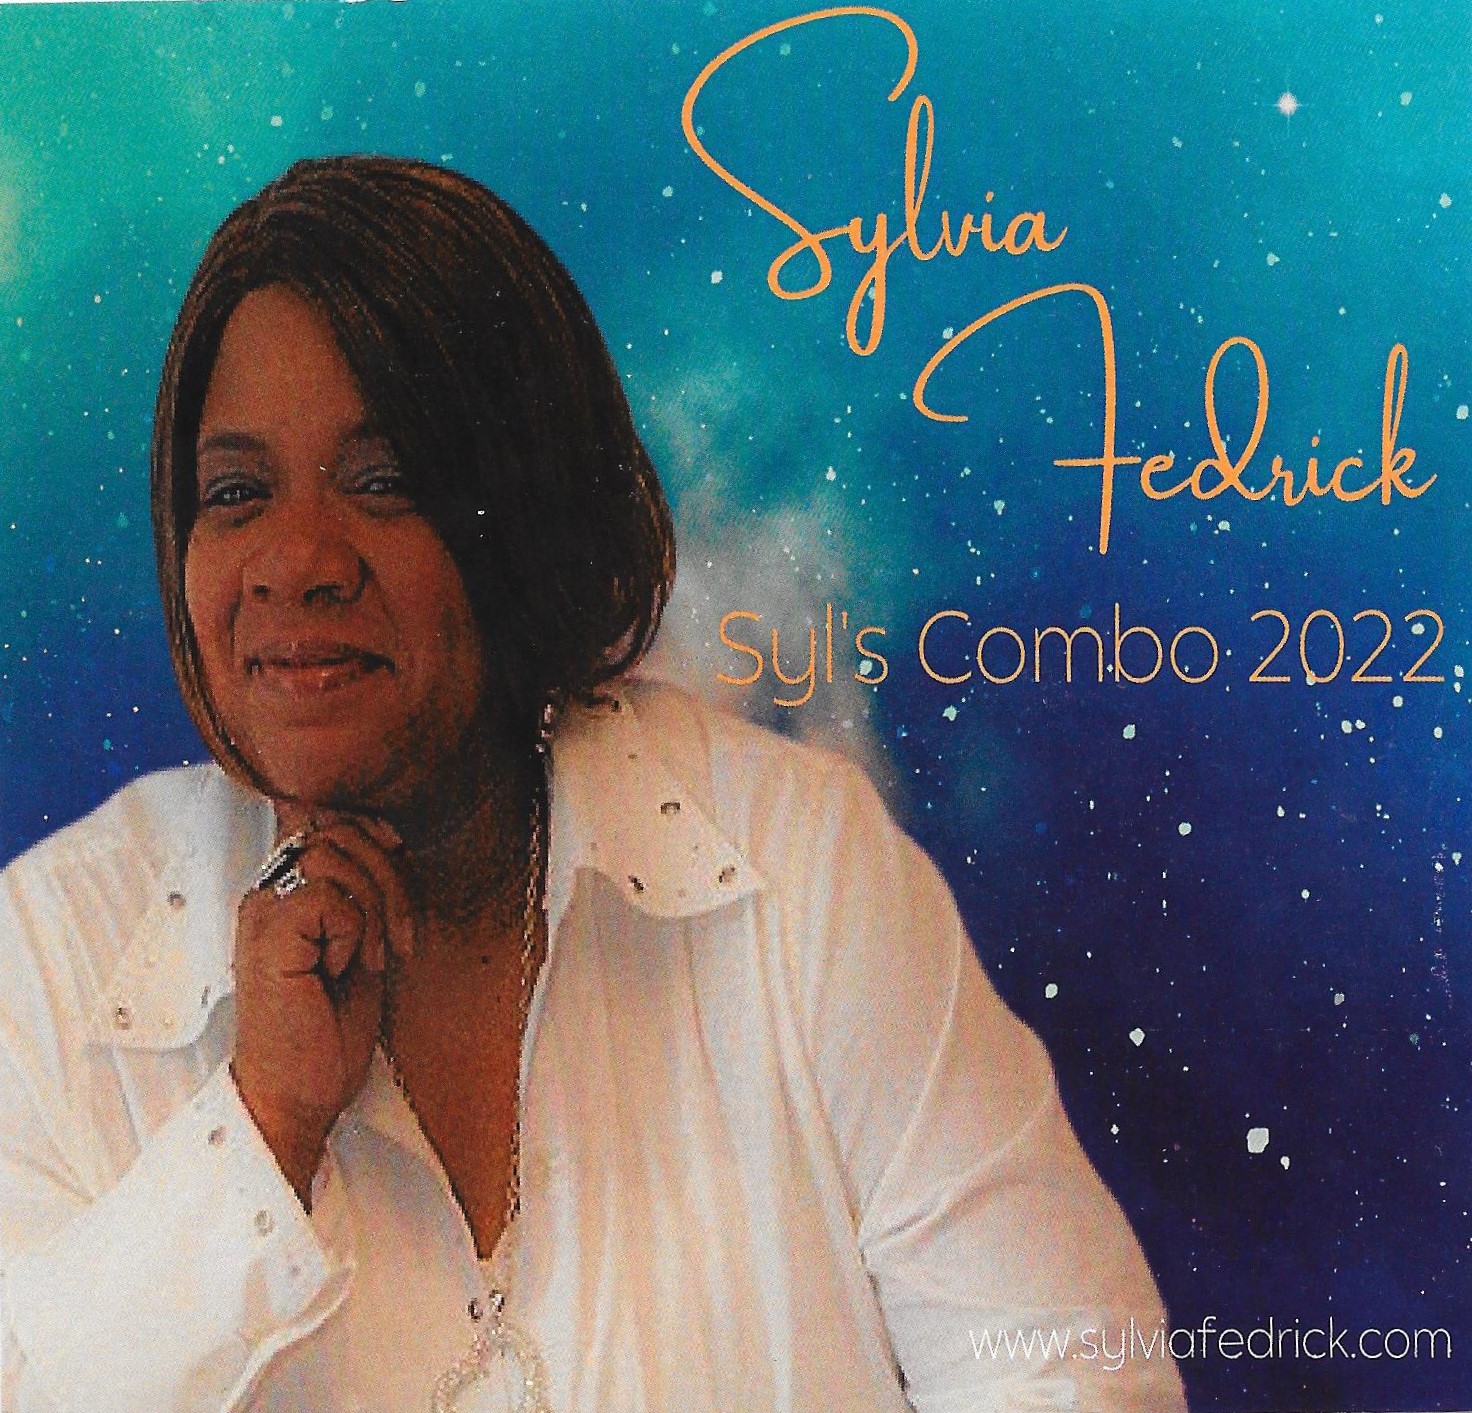 Sylvia Fedrick